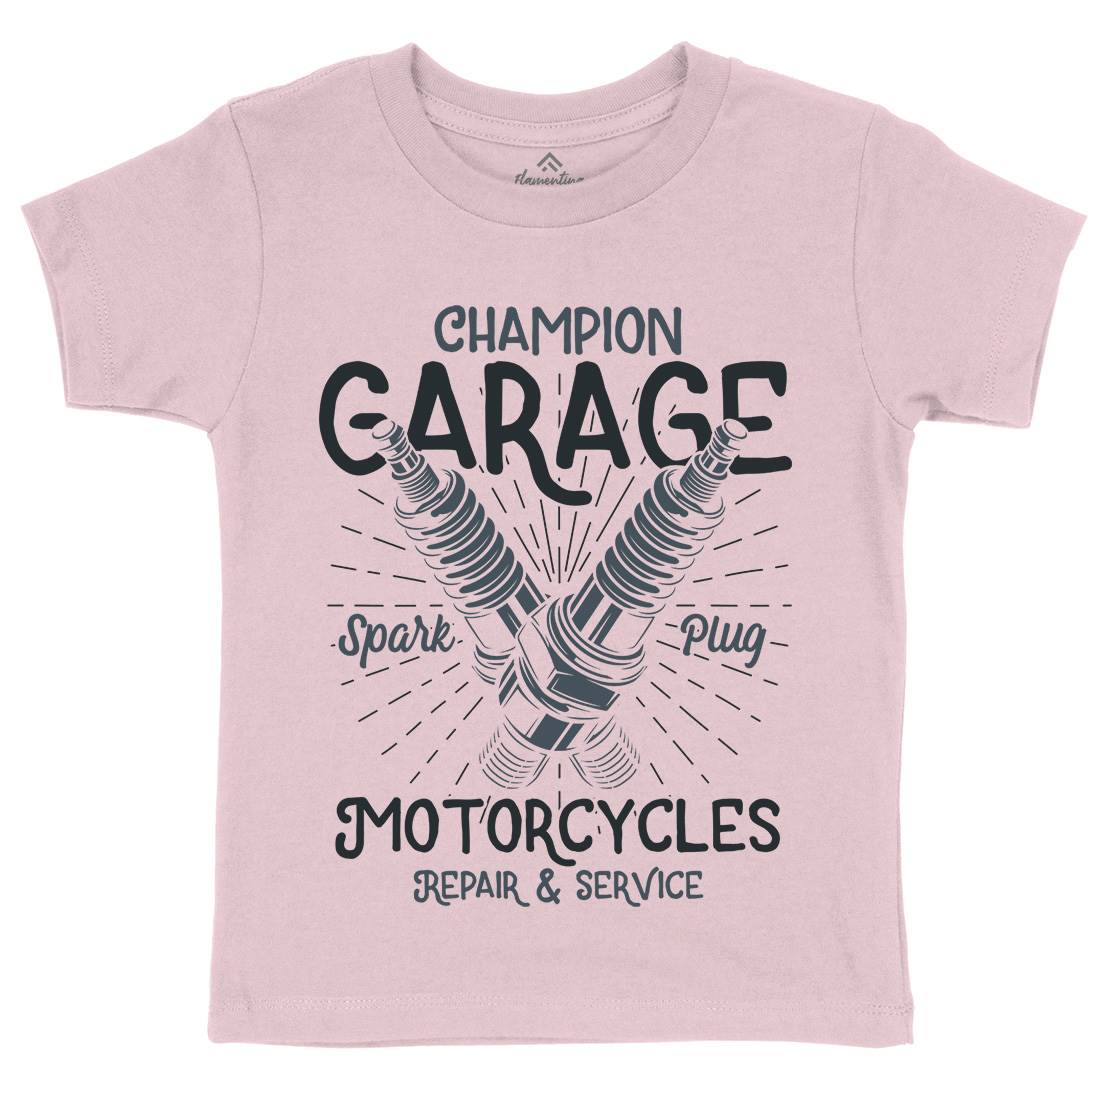 Champion Garage Kids Organic Crew Neck T-Shirt Motorcycles B835